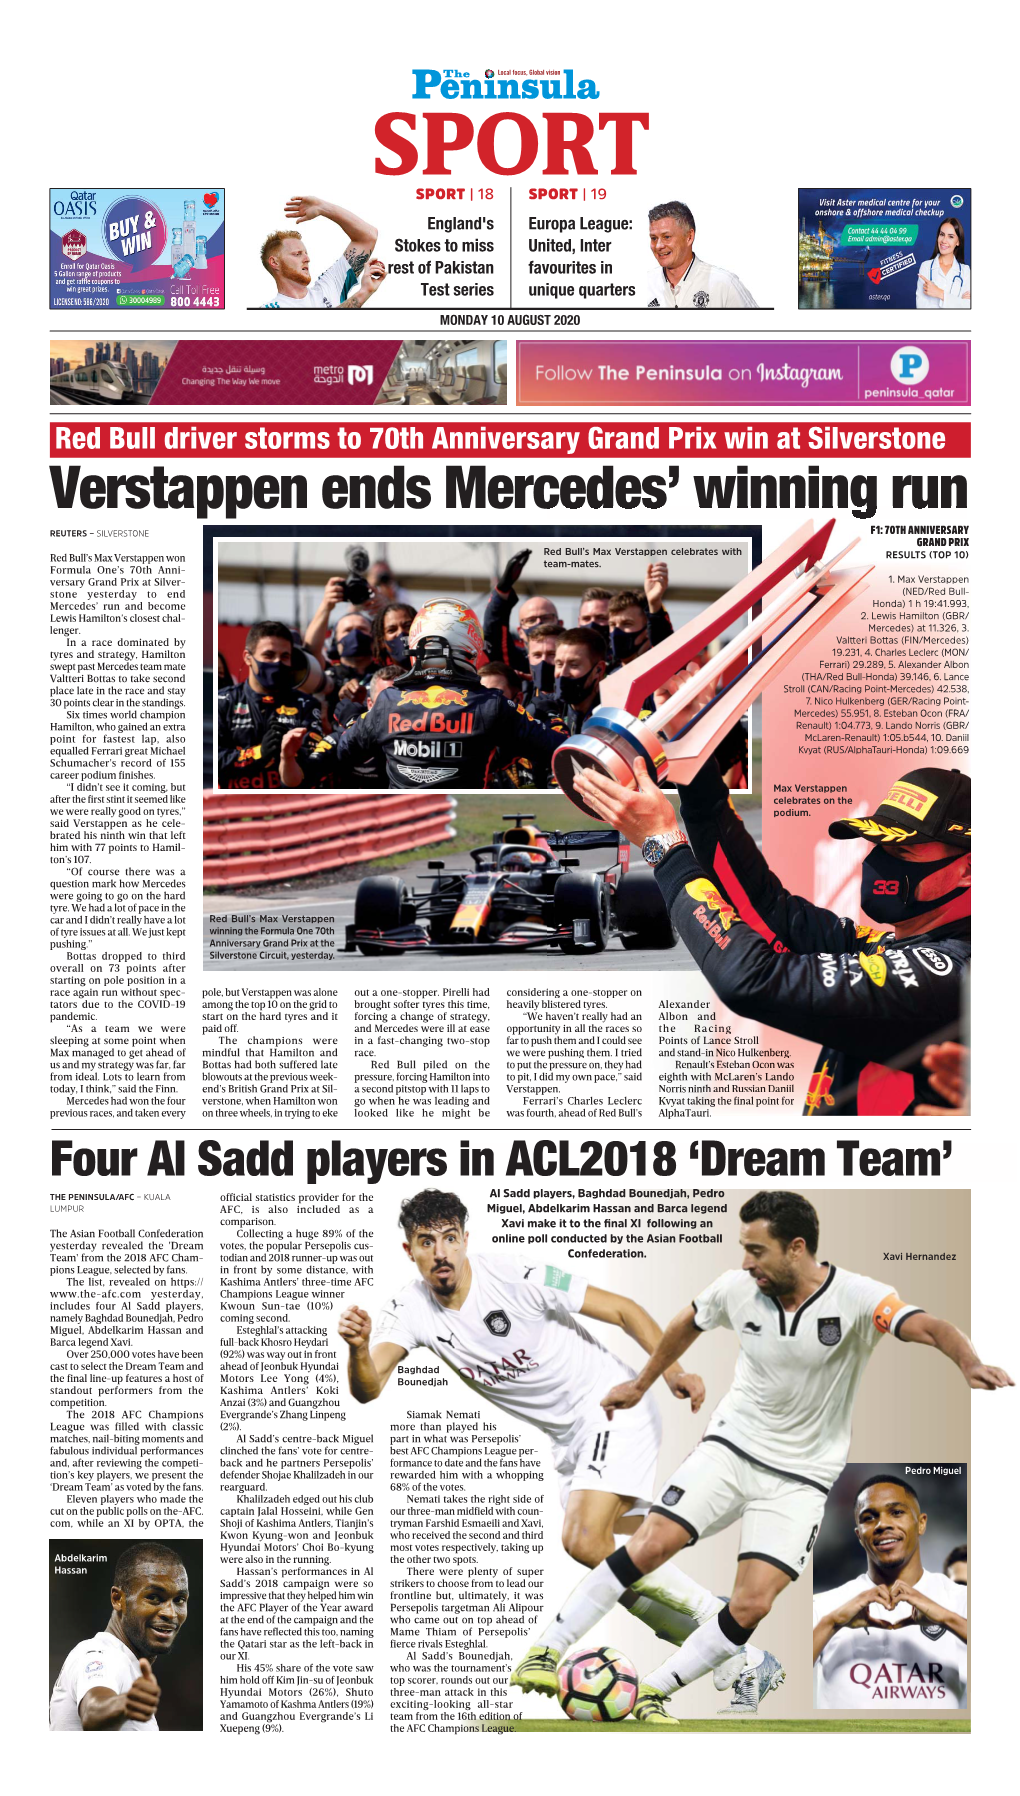 Verstappen Ends Mercedes' Winning